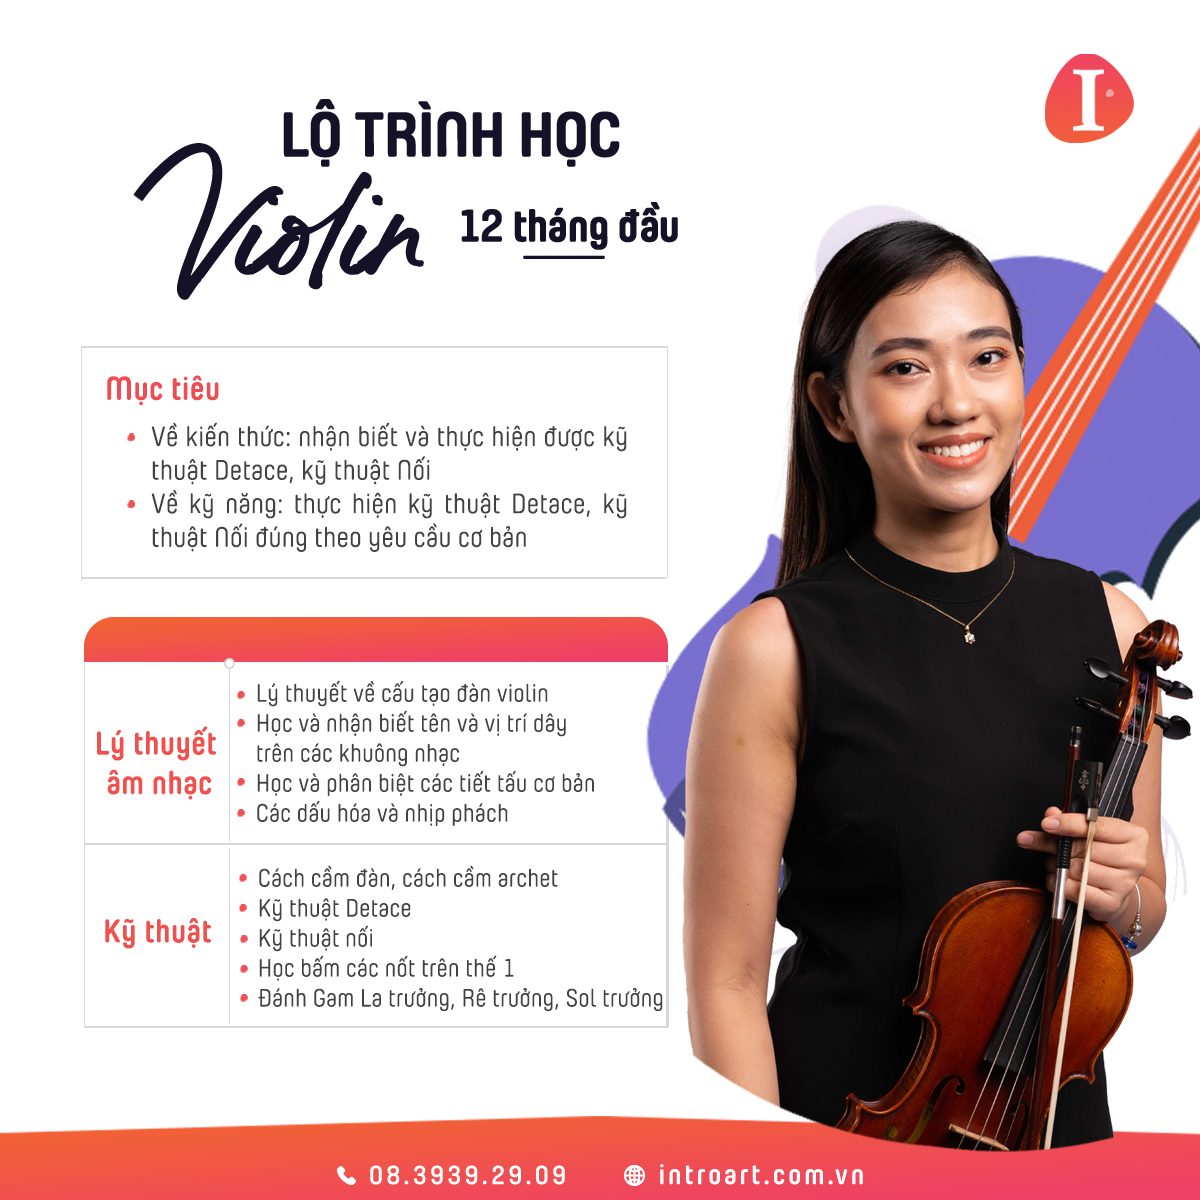 https://introart.com.vn/edu/wp-content/uploads/2021/12/lo-trinh-hoc-violin.png